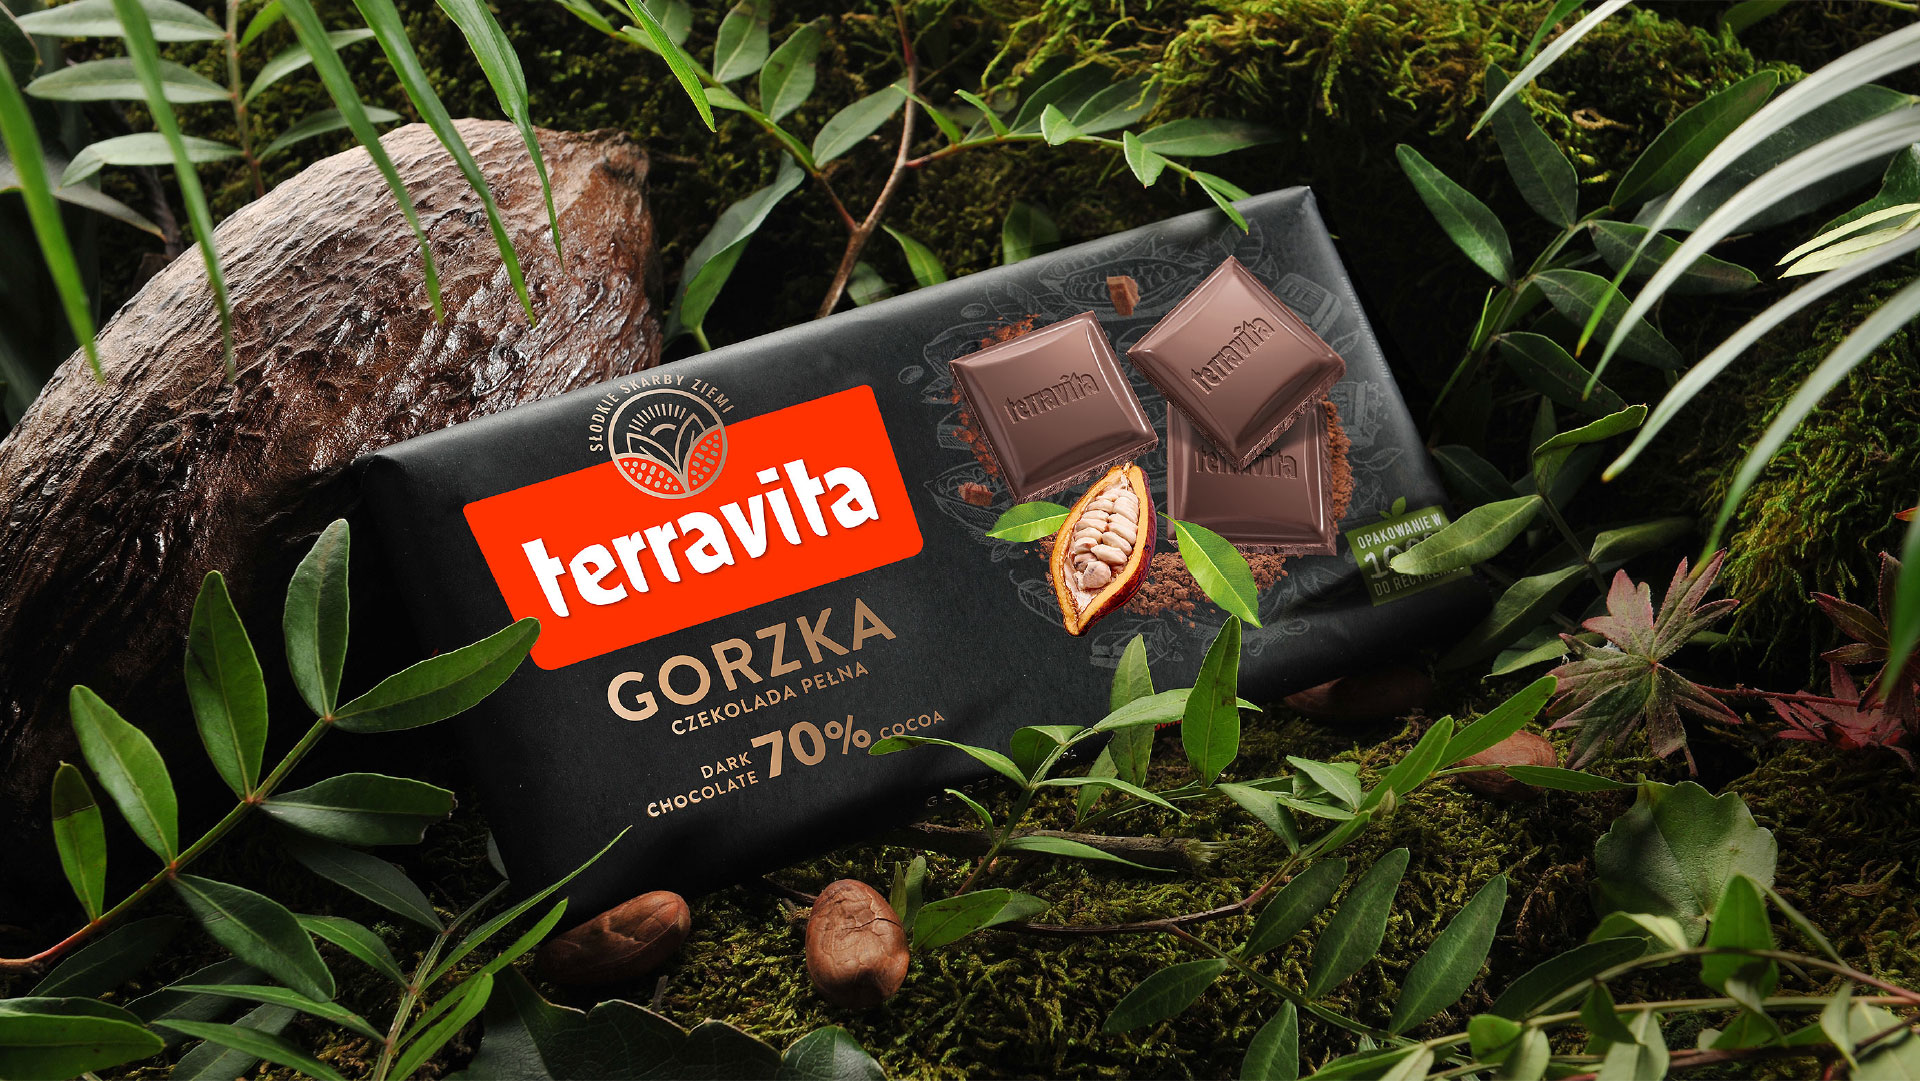 Czekolada Terravita gorzka - nowe opakowania i świat marki bazujący na pozycjonowaniu Słodkie Skarby Ziemi. Tabliczka czekolady w nowym packaging designie w otoczeniu egzotycznej roślinności, oparta o owoc kakaowca.